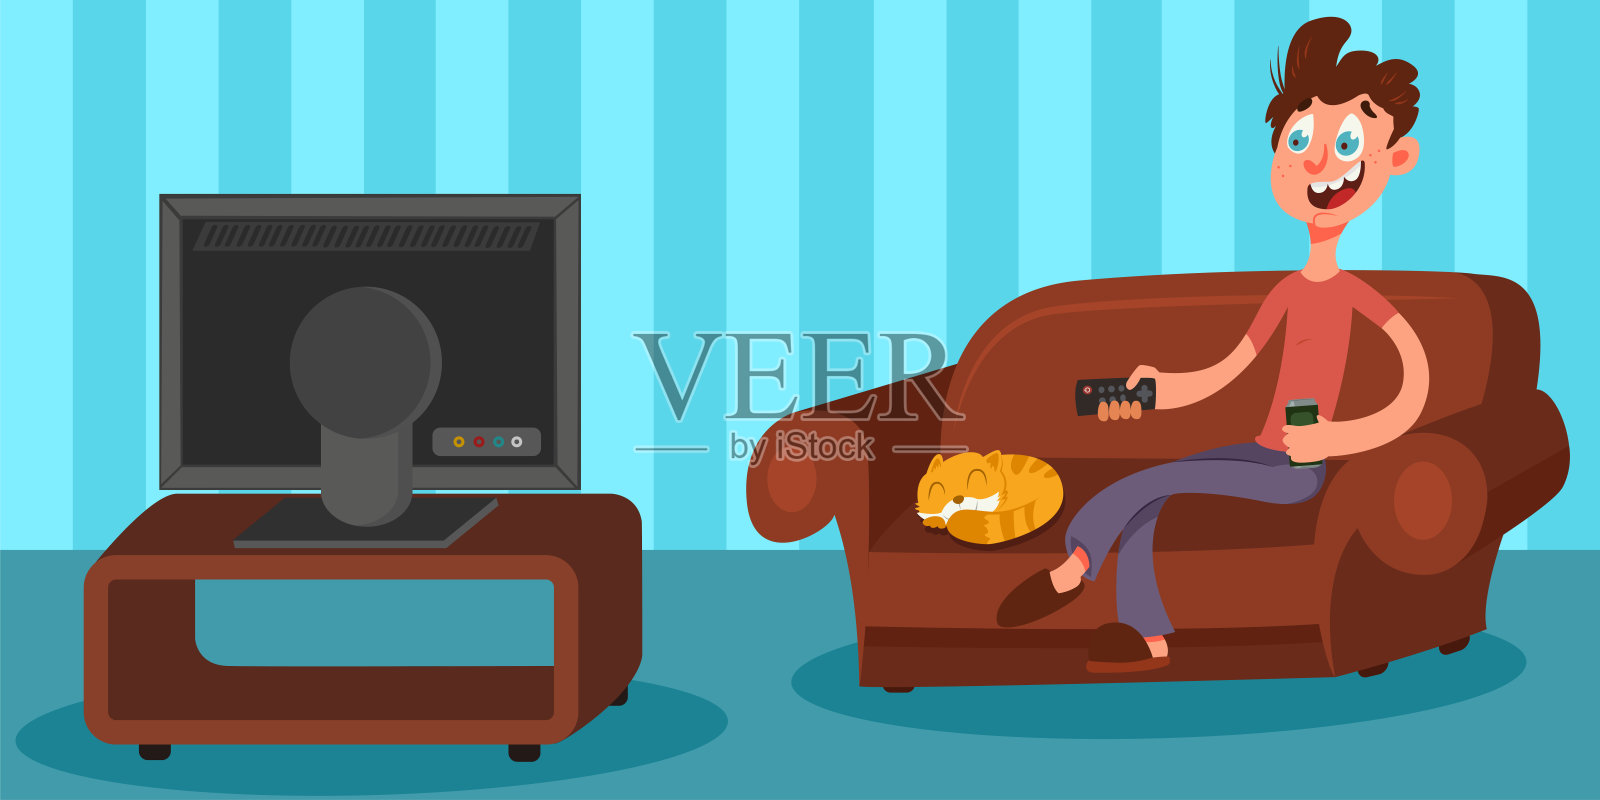 一个男人坐在客厅的沙发上看电视，手里拿着遥控器，手里拿着啤酒。男性矢量卡通人物在沙发上。插画图片素材